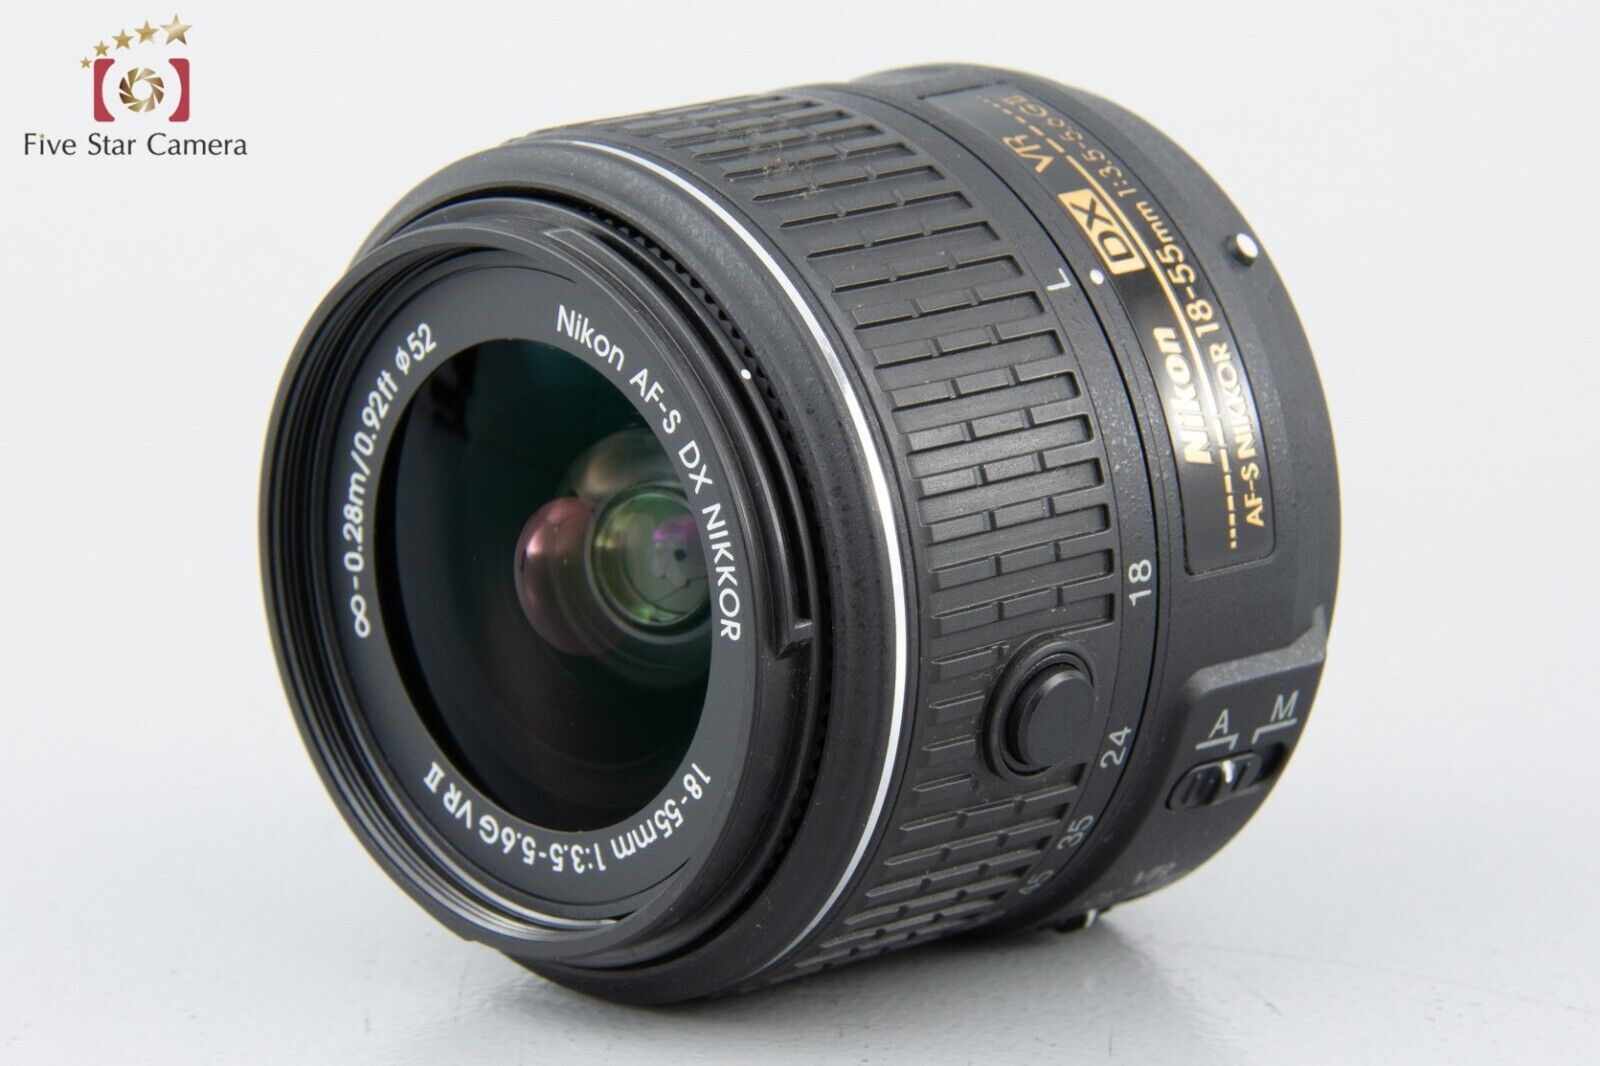 "Shutter count 4,726" Nikon D3300 24.2 MP DSLR Black 18-55 VR II Lens Kit